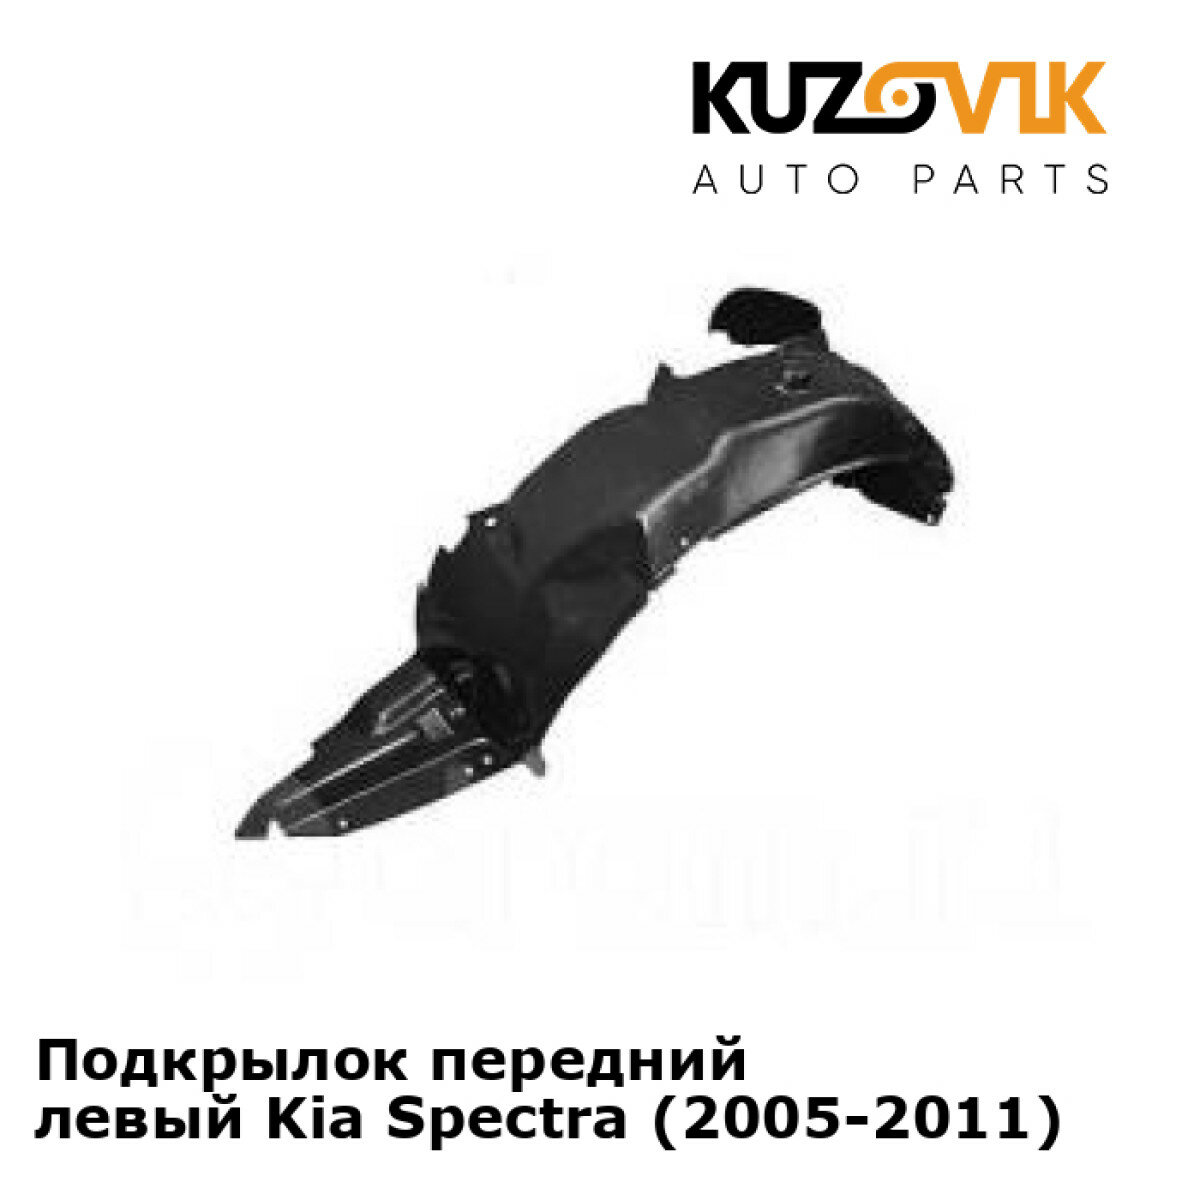 Подкрылок передний левый Kia Spectra (2005-2011)